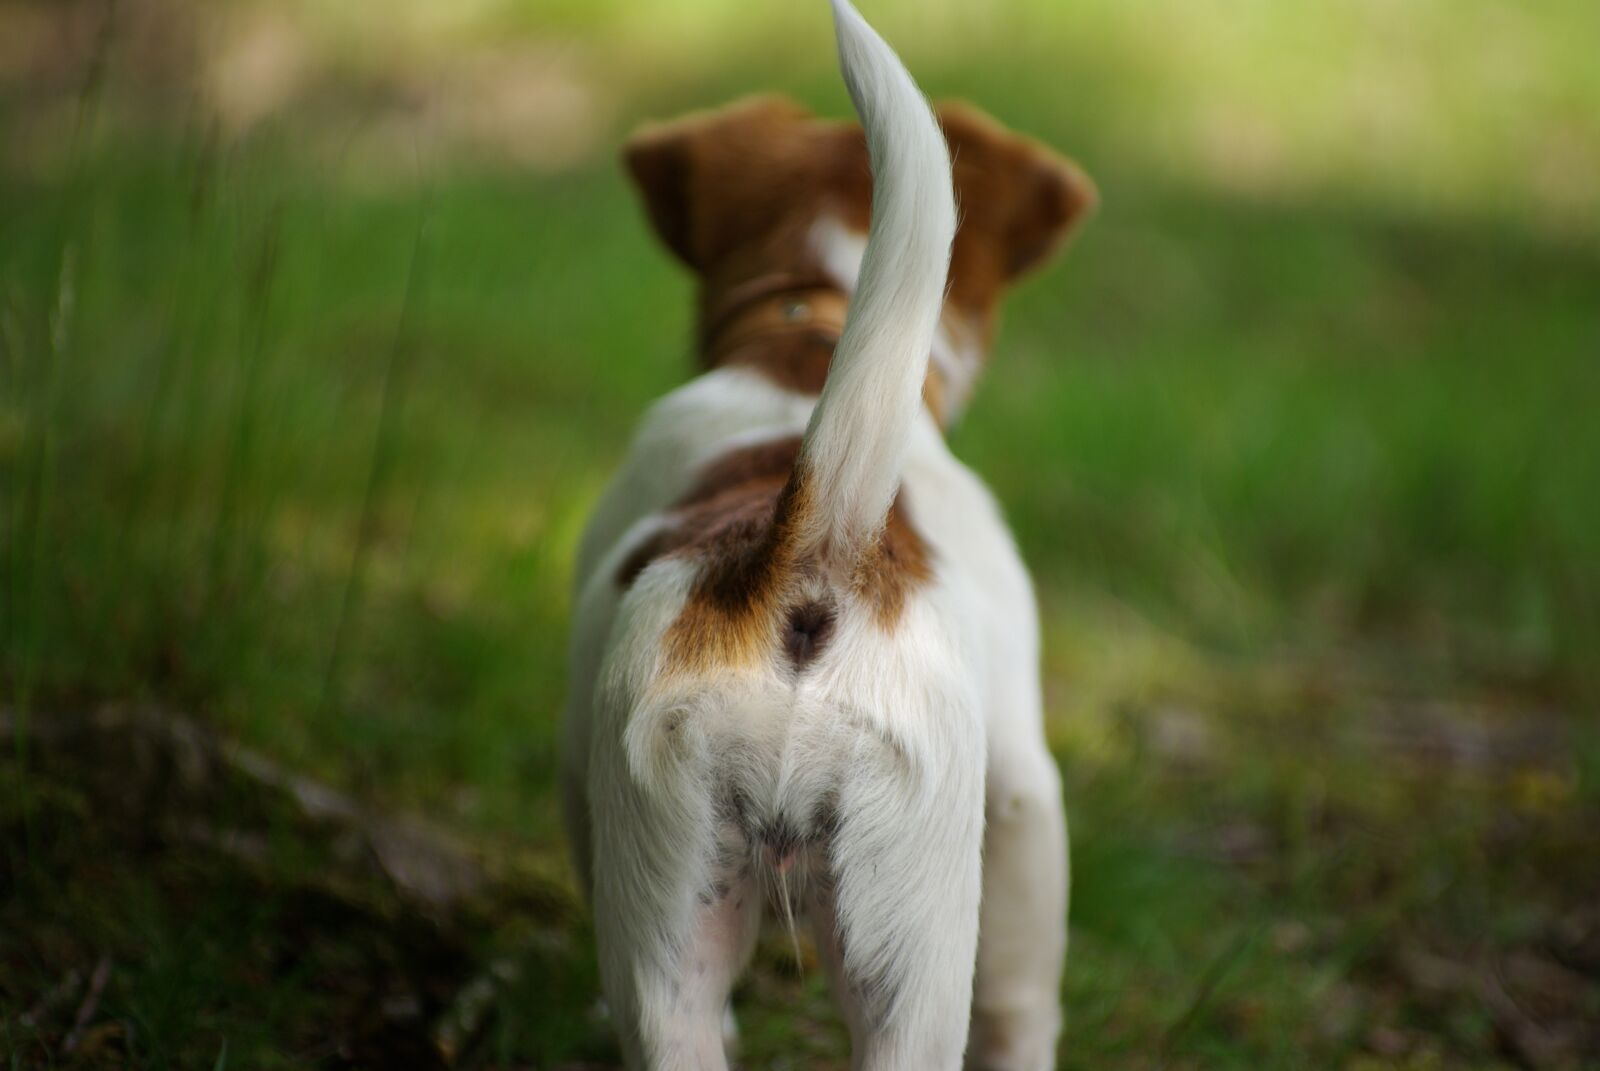 Pentax K10D sample photo. Dog, tail, pet photography